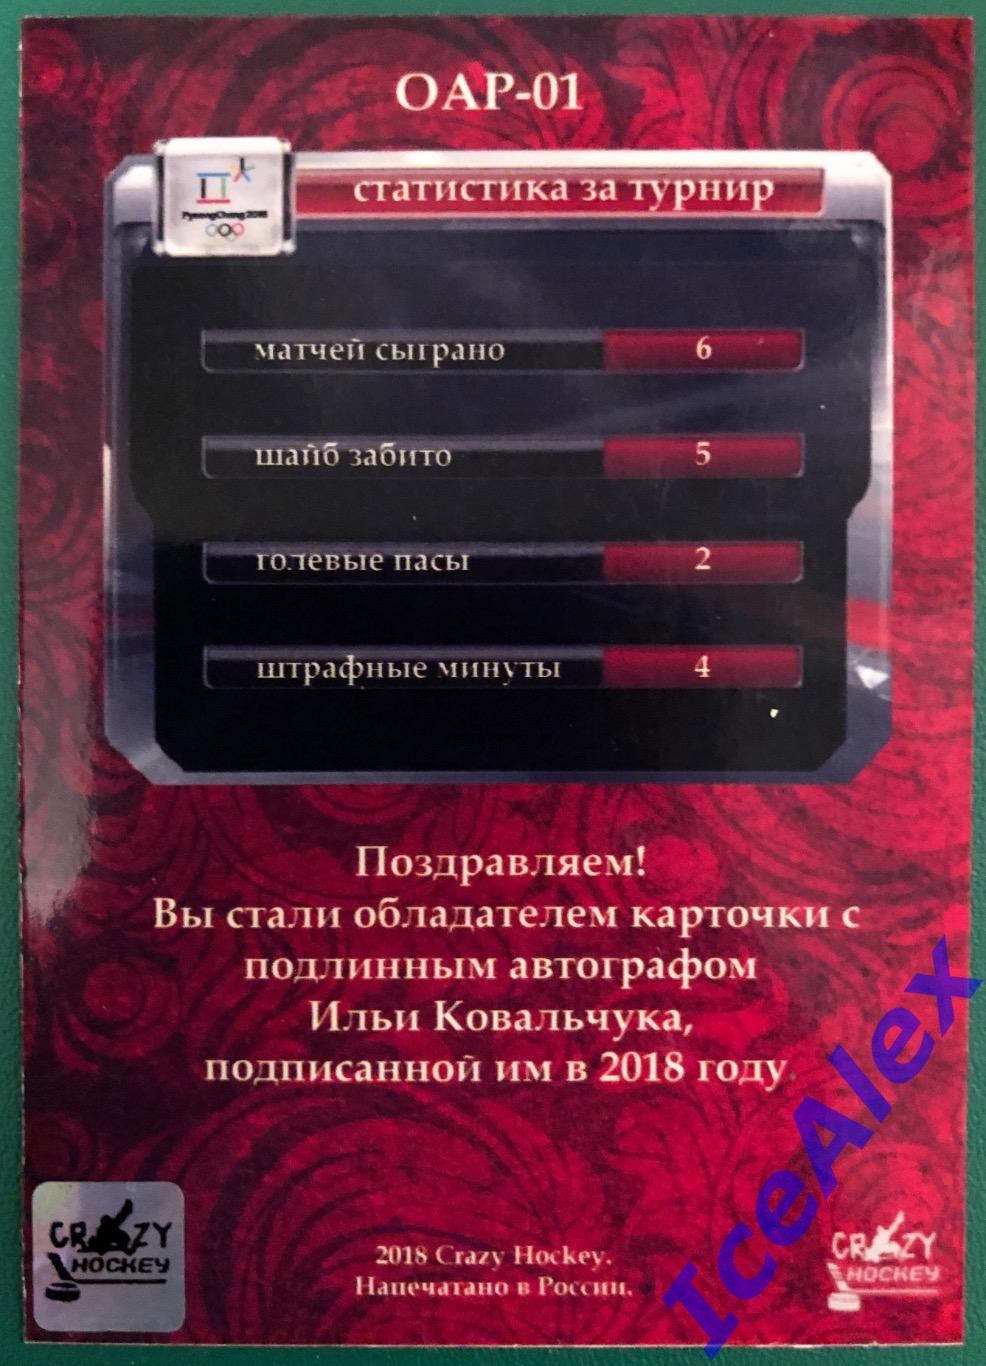 2018 Crazy Hockey, олимпиада Пхенчхана, России, автограф,#ОАР-01, Илья Ковальчук 1